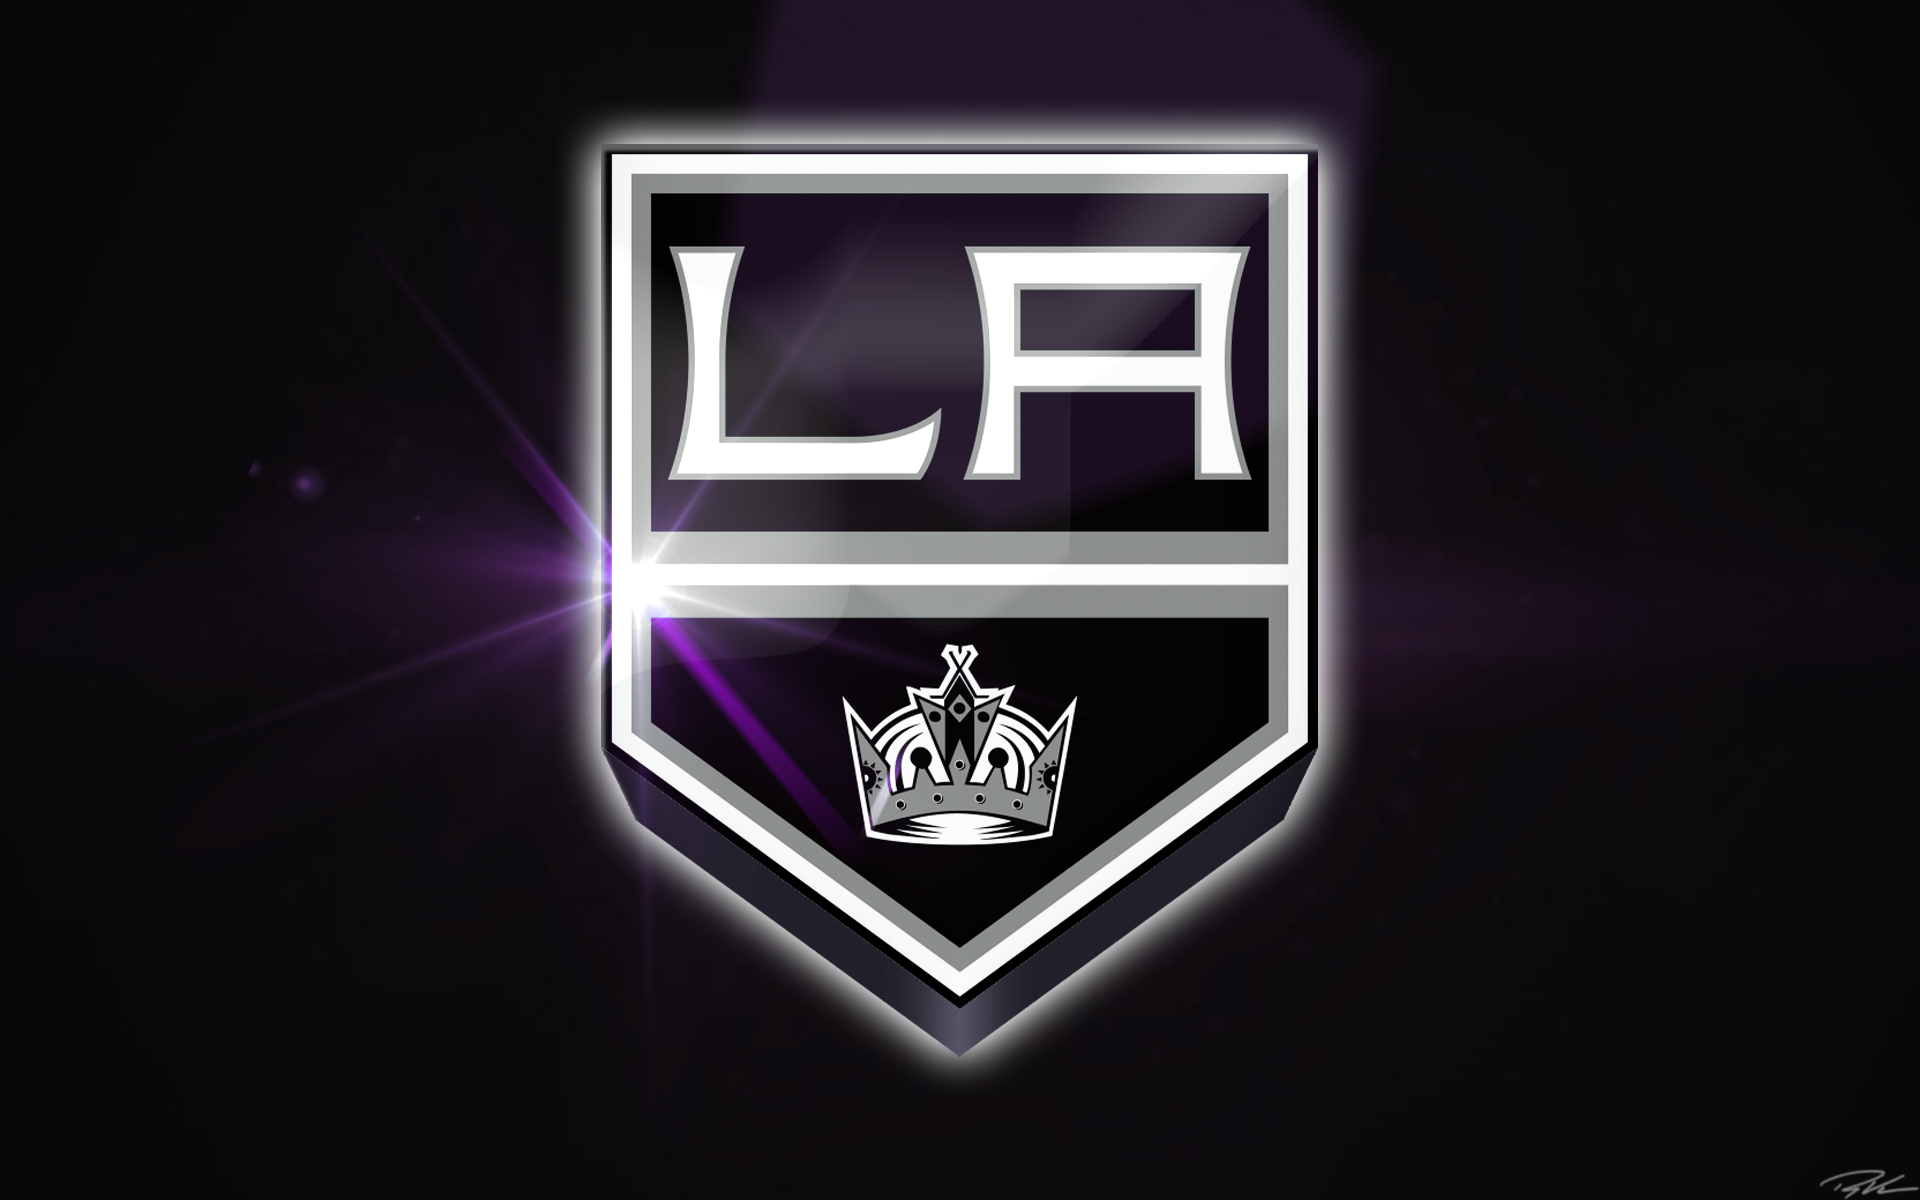 48+] LA Kings Logo Wallpaper - WallpaperSafari